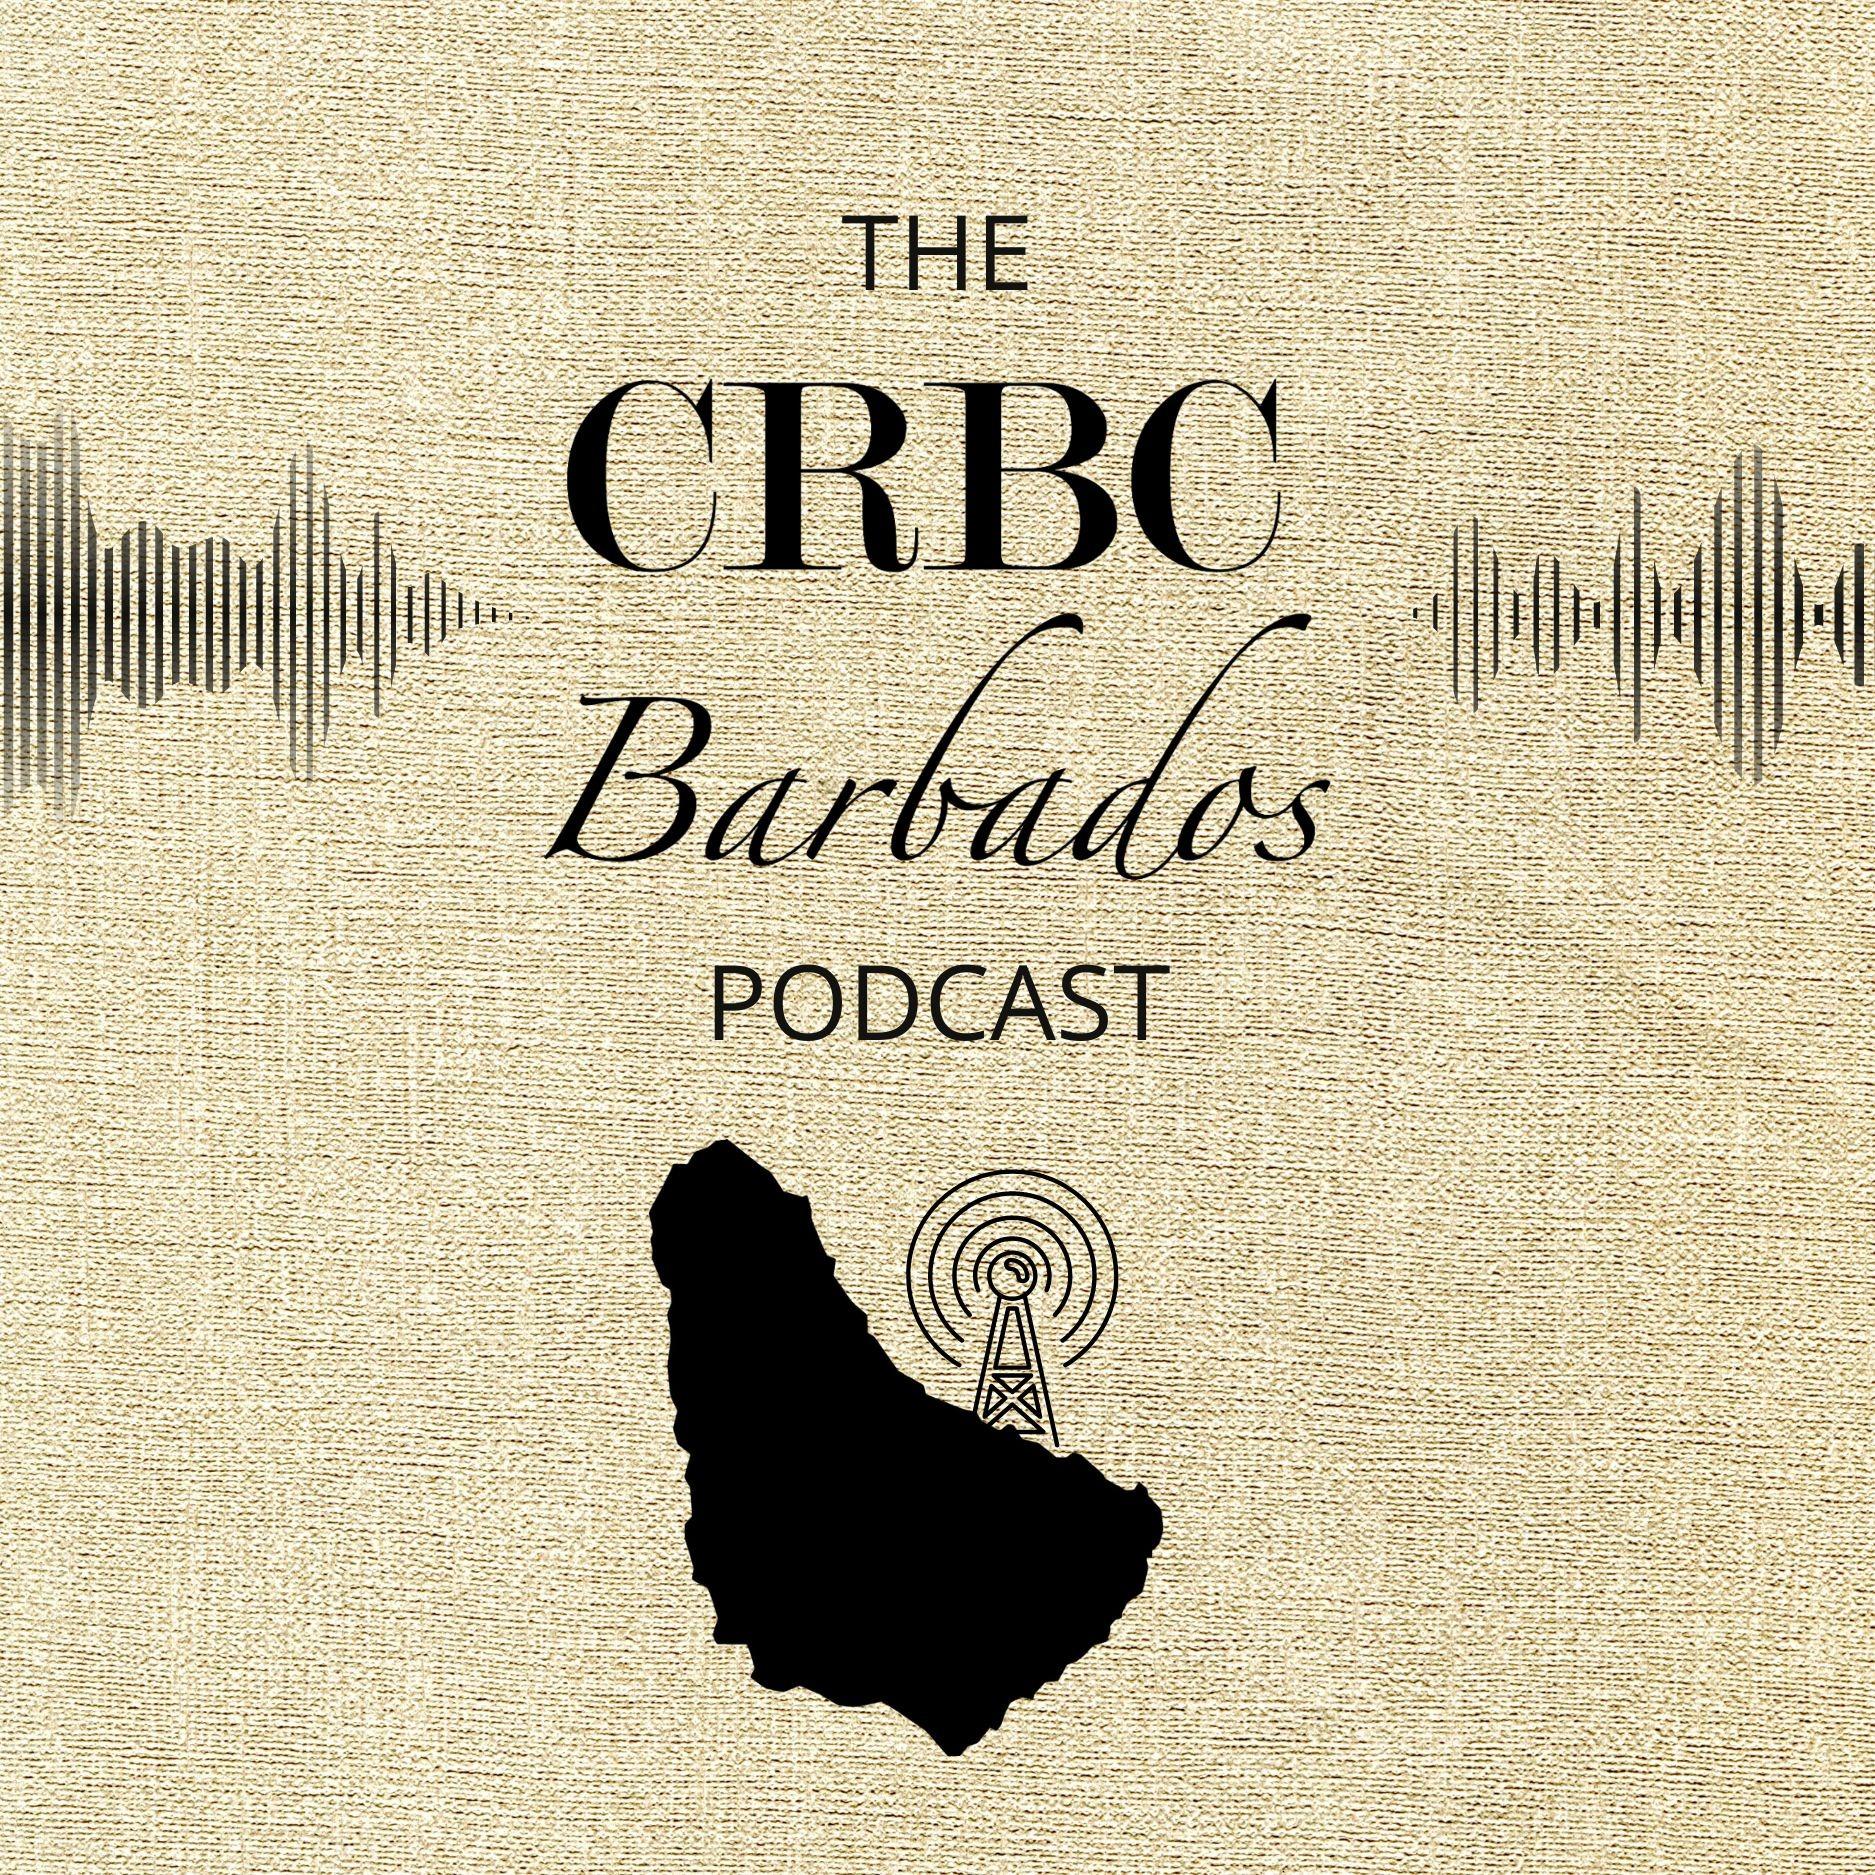 The CRBC Barbados Podcast